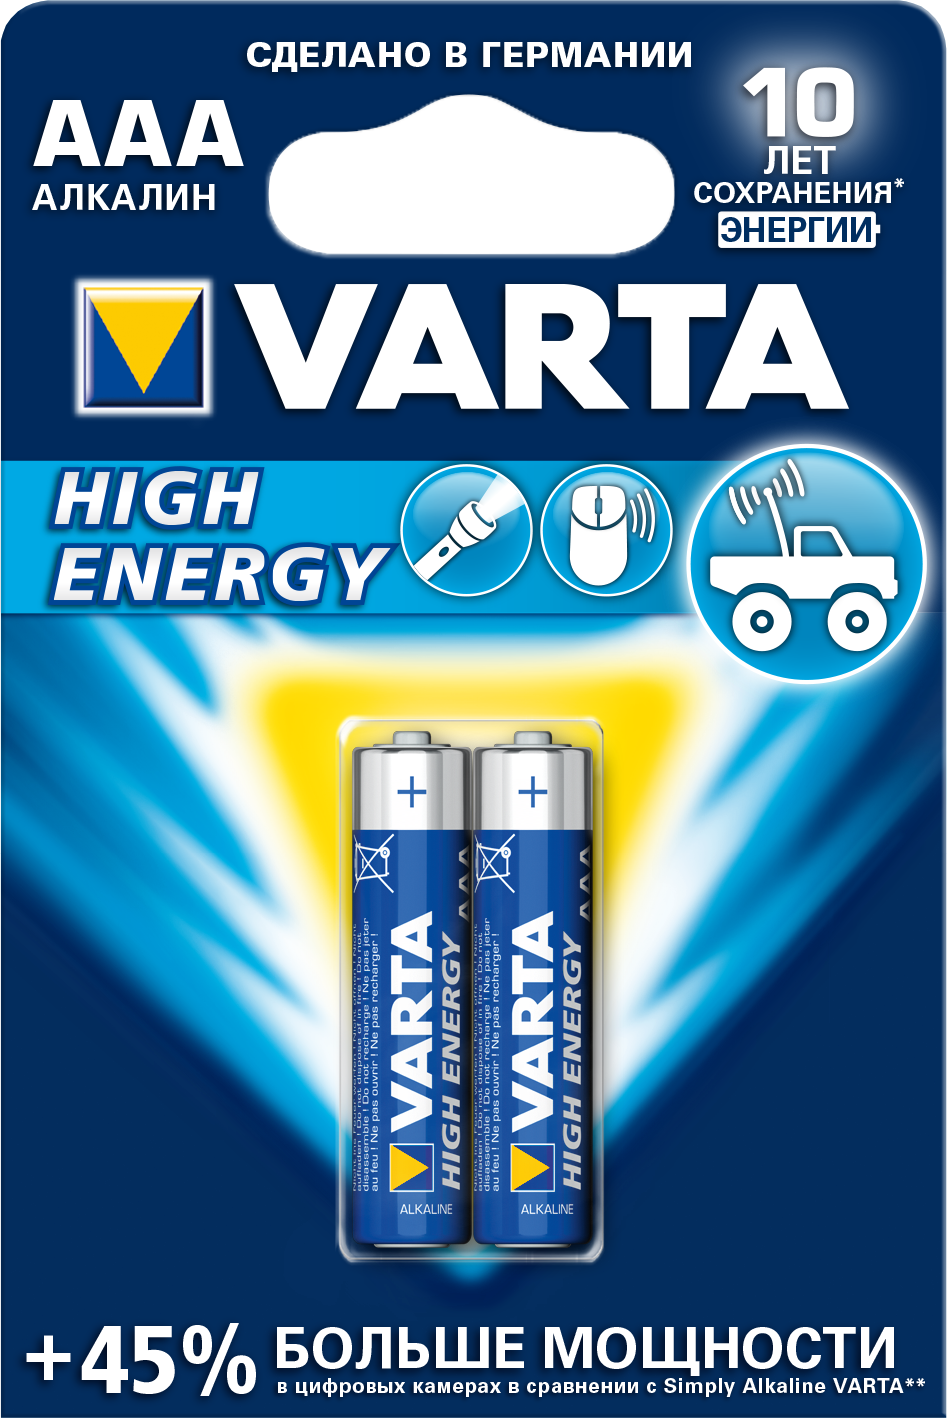 Батарейка Varta HIGH ENERGY AAA БЛ. 2,KISPIS магия вязания вяжем спицами одежду игрушки и аксессуары из мира гарри поттера официальное издание